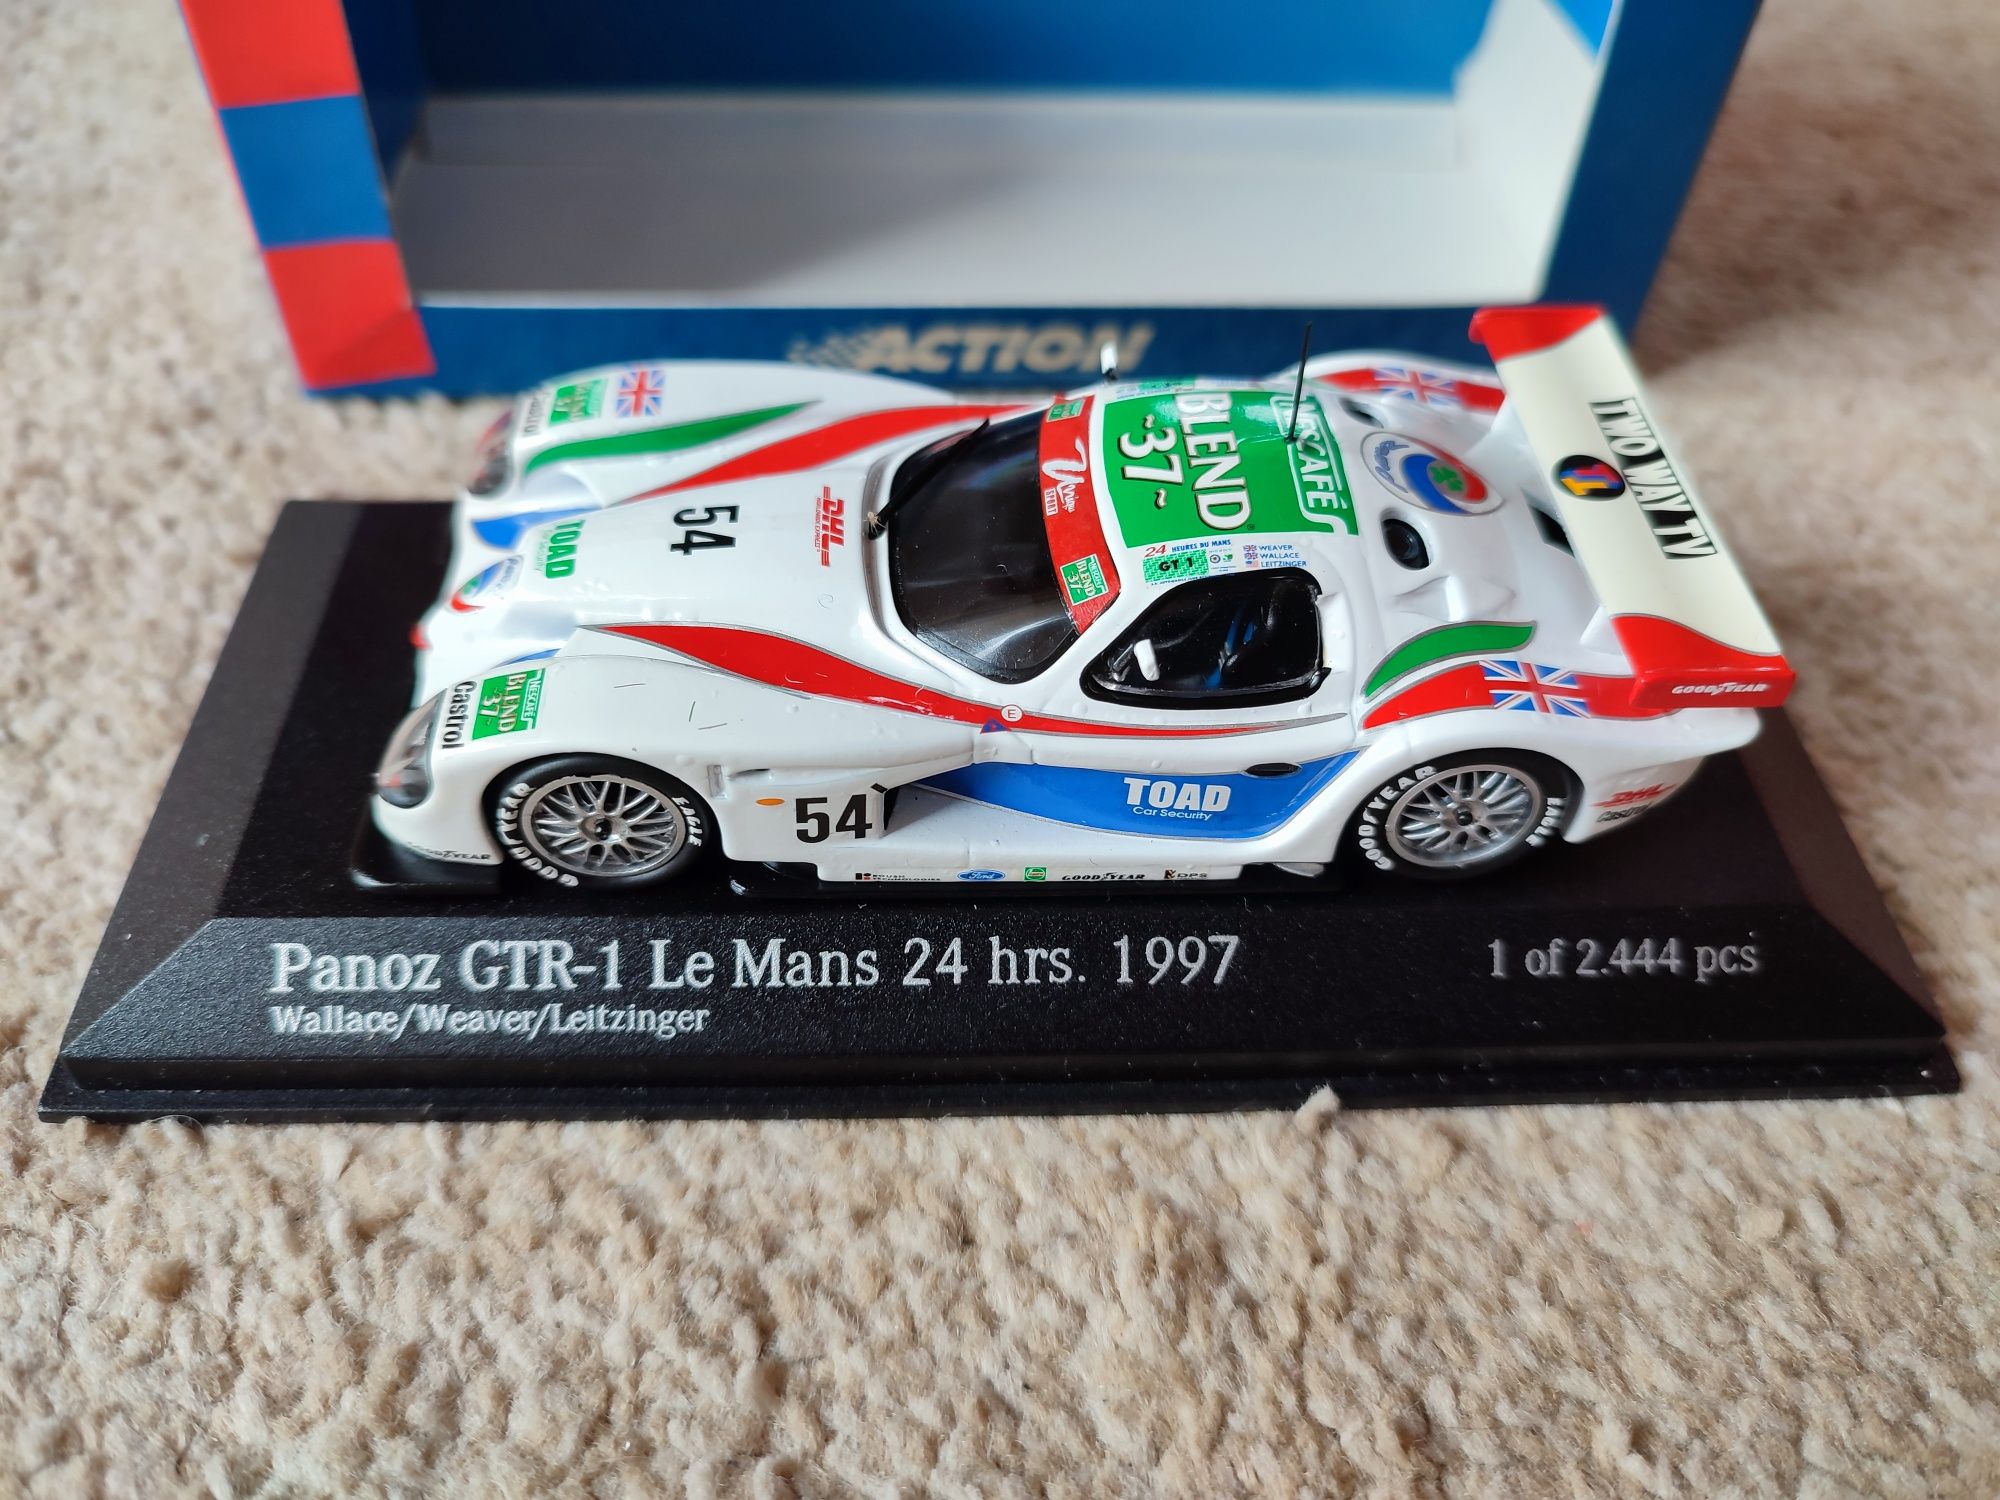 Panoz GTR-1 Le Mans 97, model kolekcjonerski w skali 1:43, nie używany